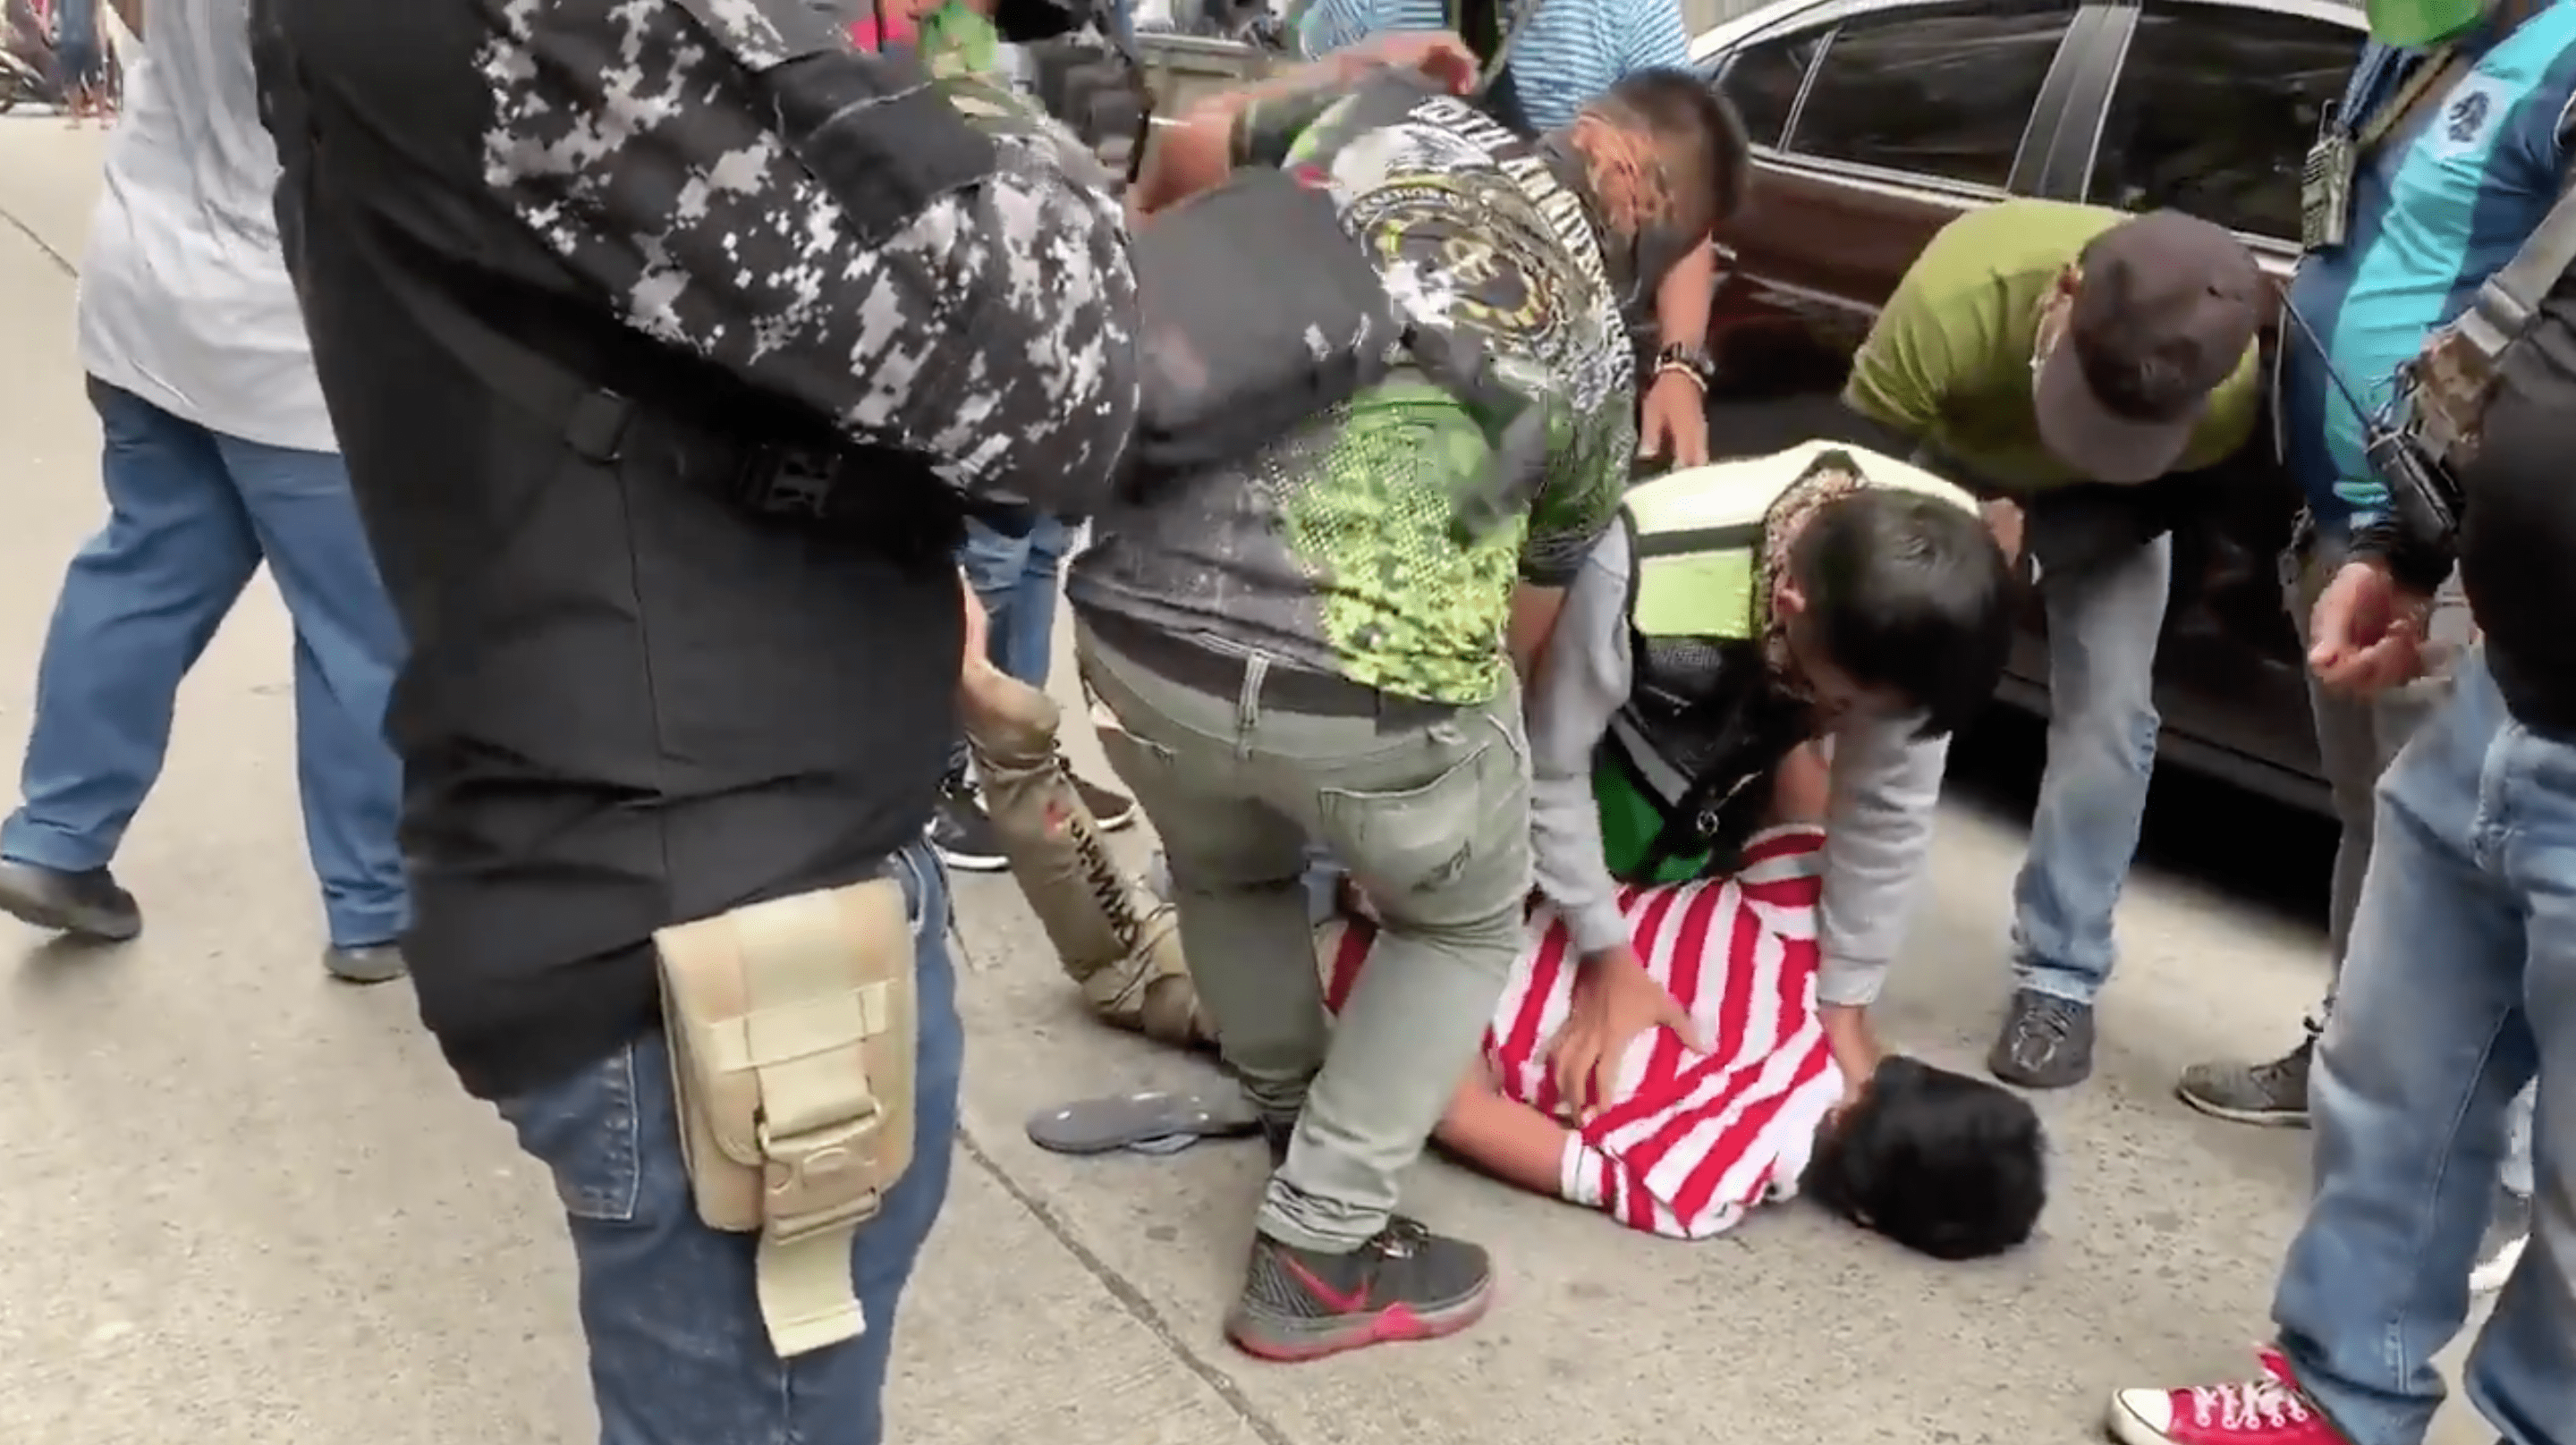 Video of Parañaque officials manhandling vendor sparks outrage online